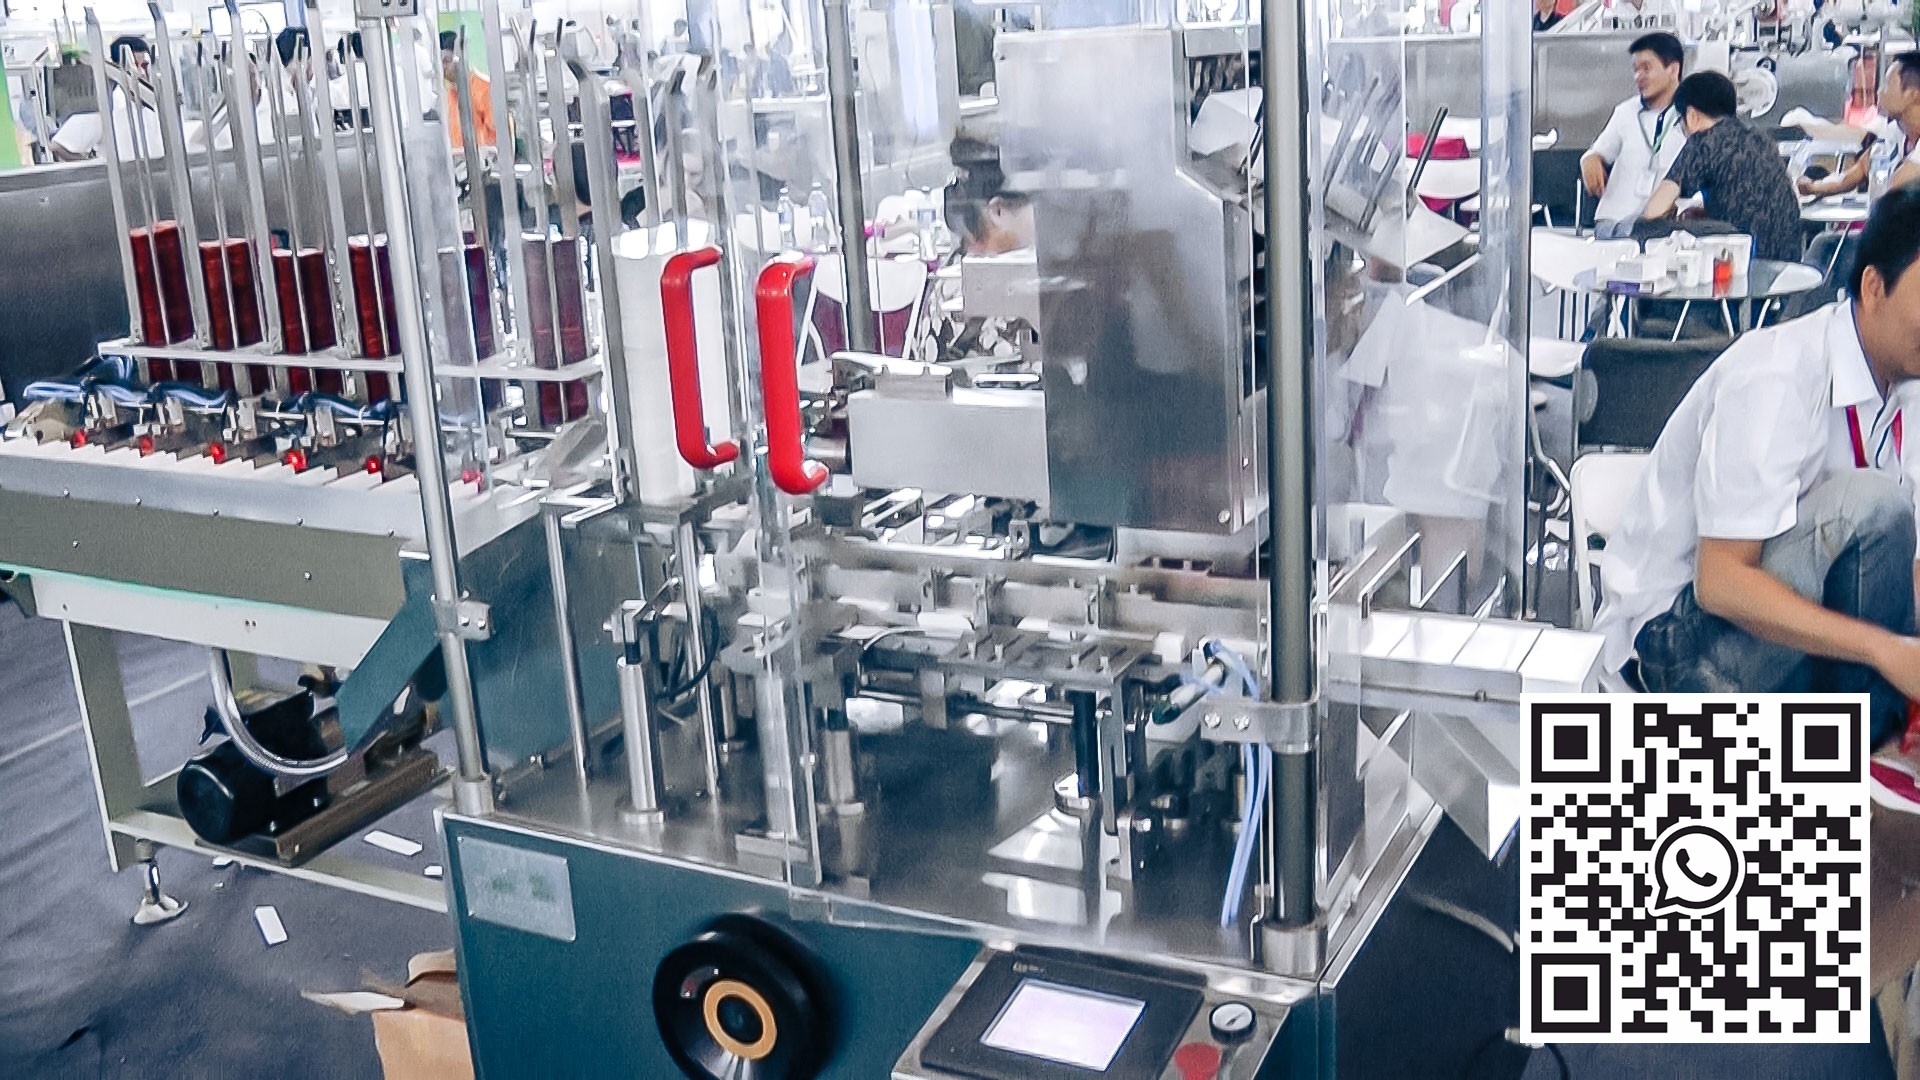 Pappmaskin for automatisk utstyr for kondomer i farmasøytisk produksjon